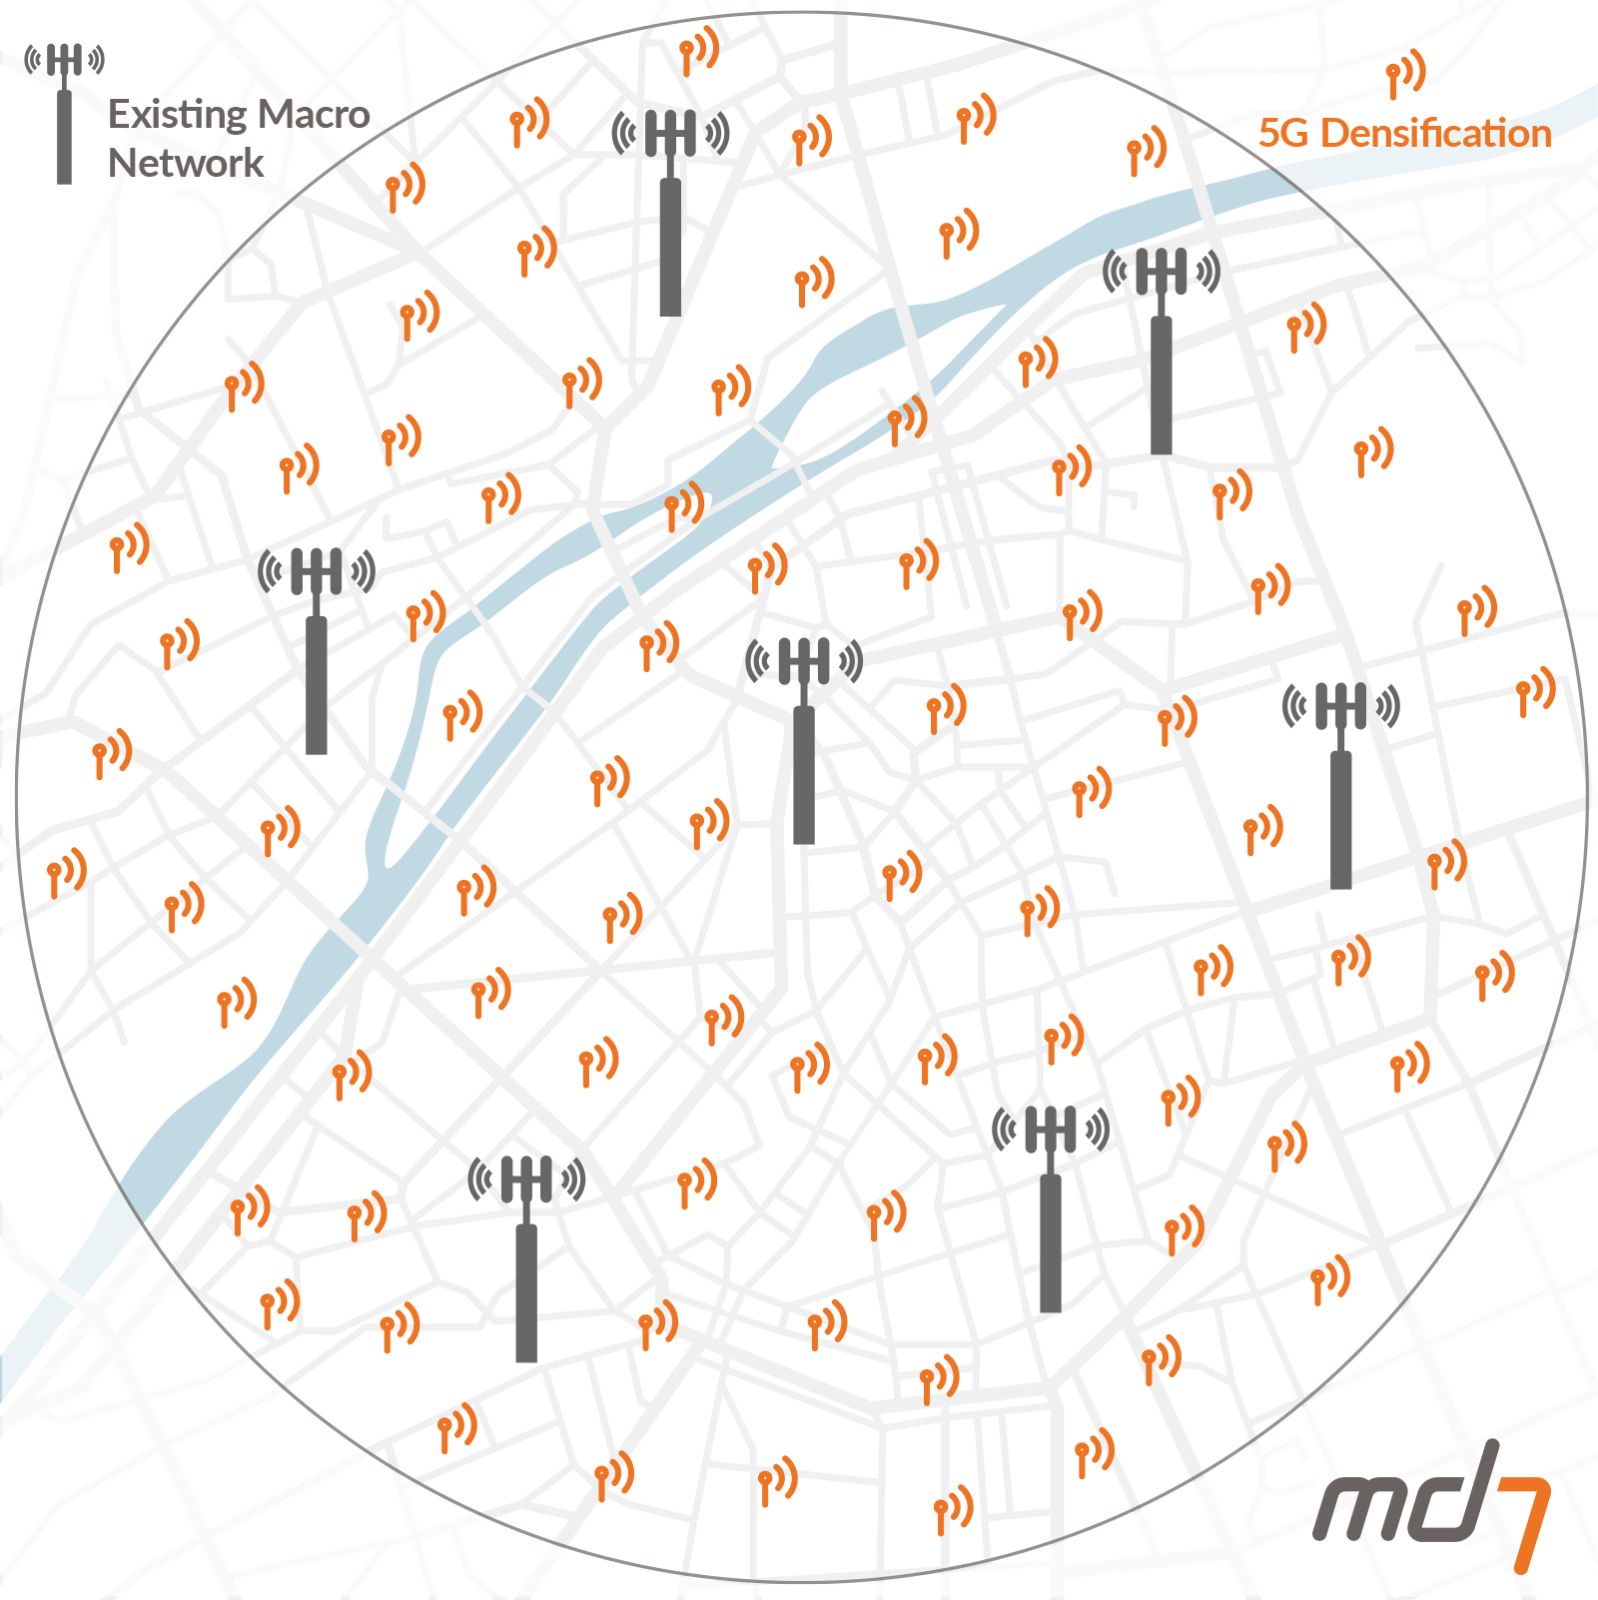 Md7 4G vs 5G Densification in city